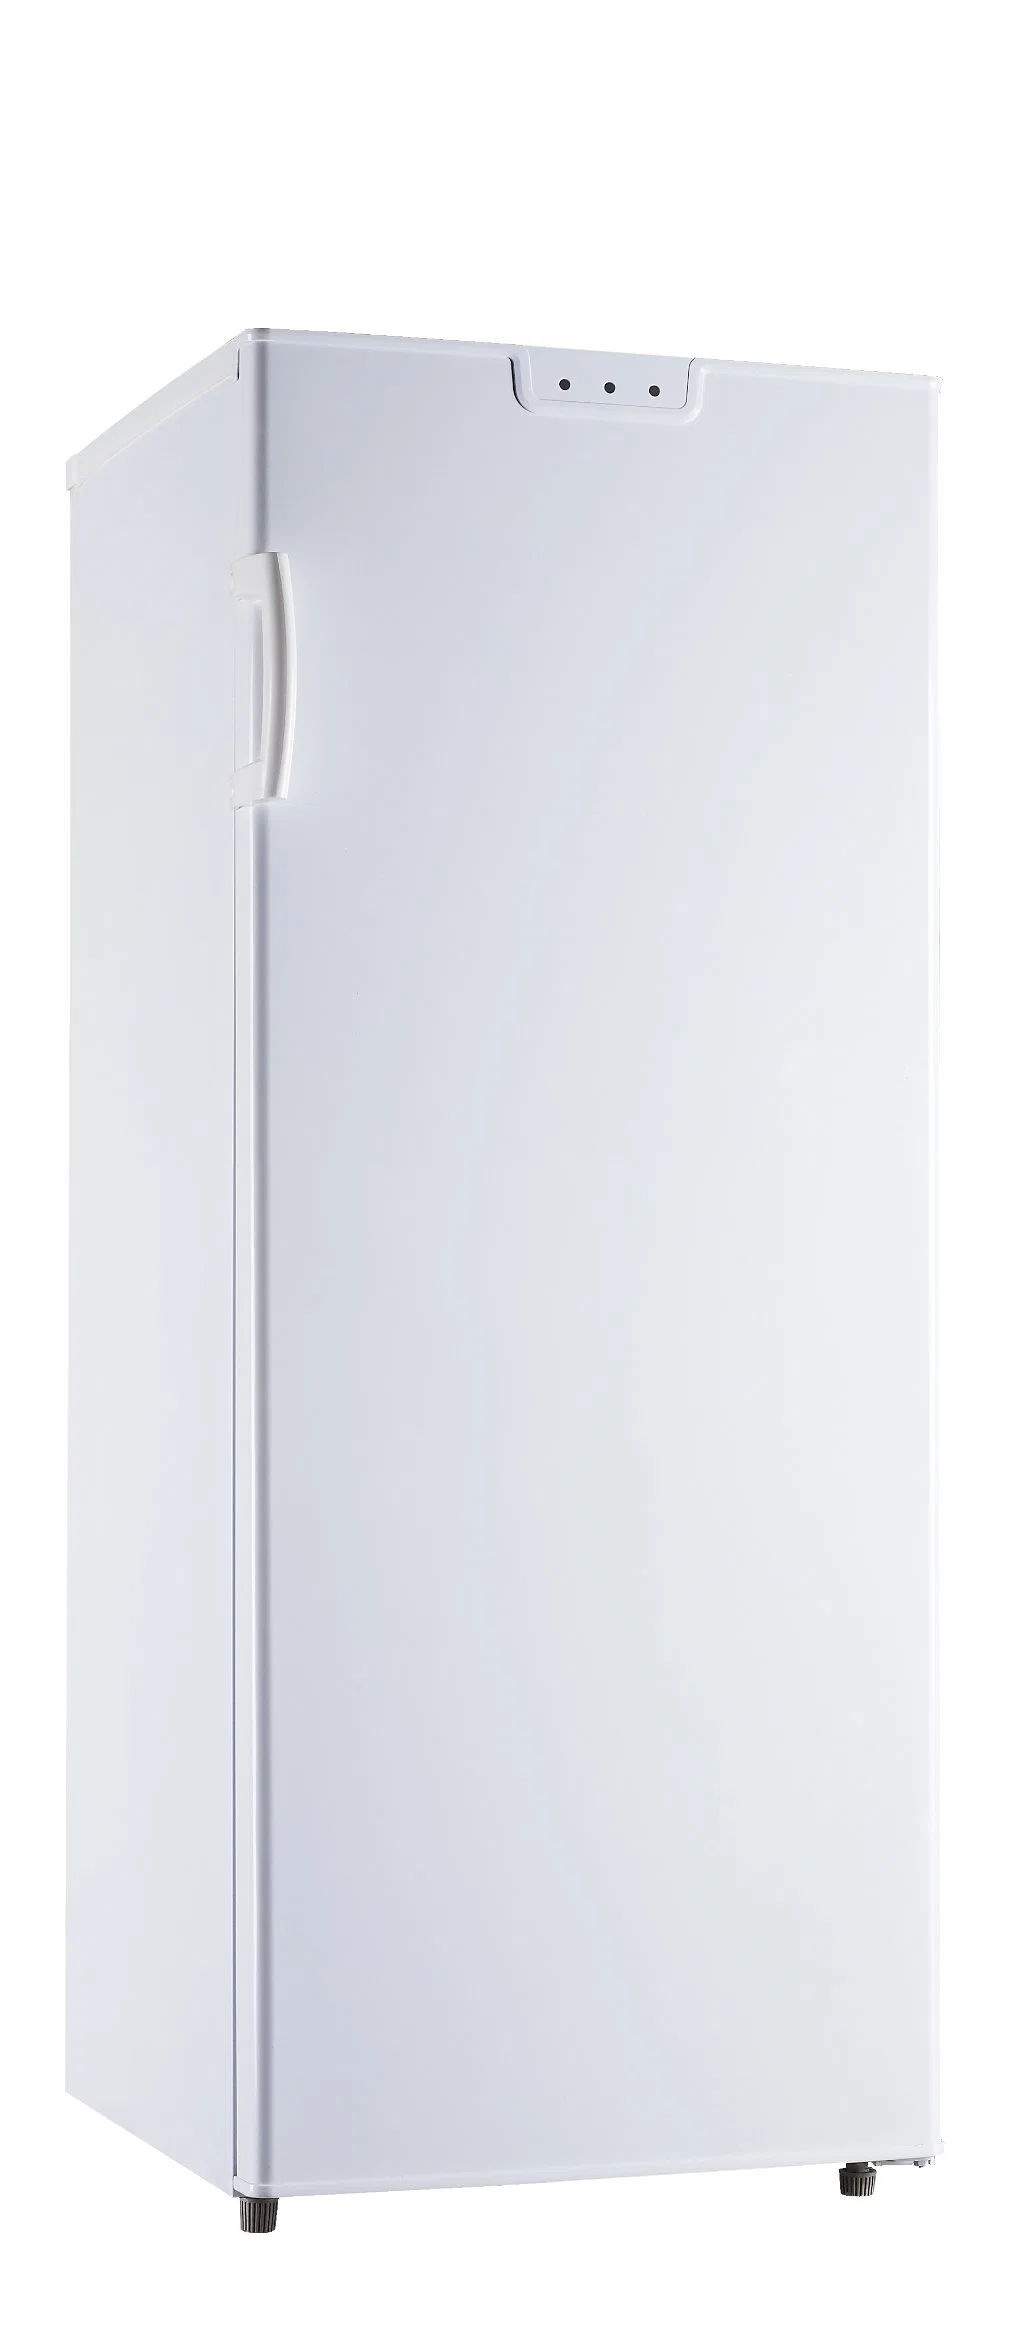 China Factory Hot Sale Refrigerator Double Door Fridge